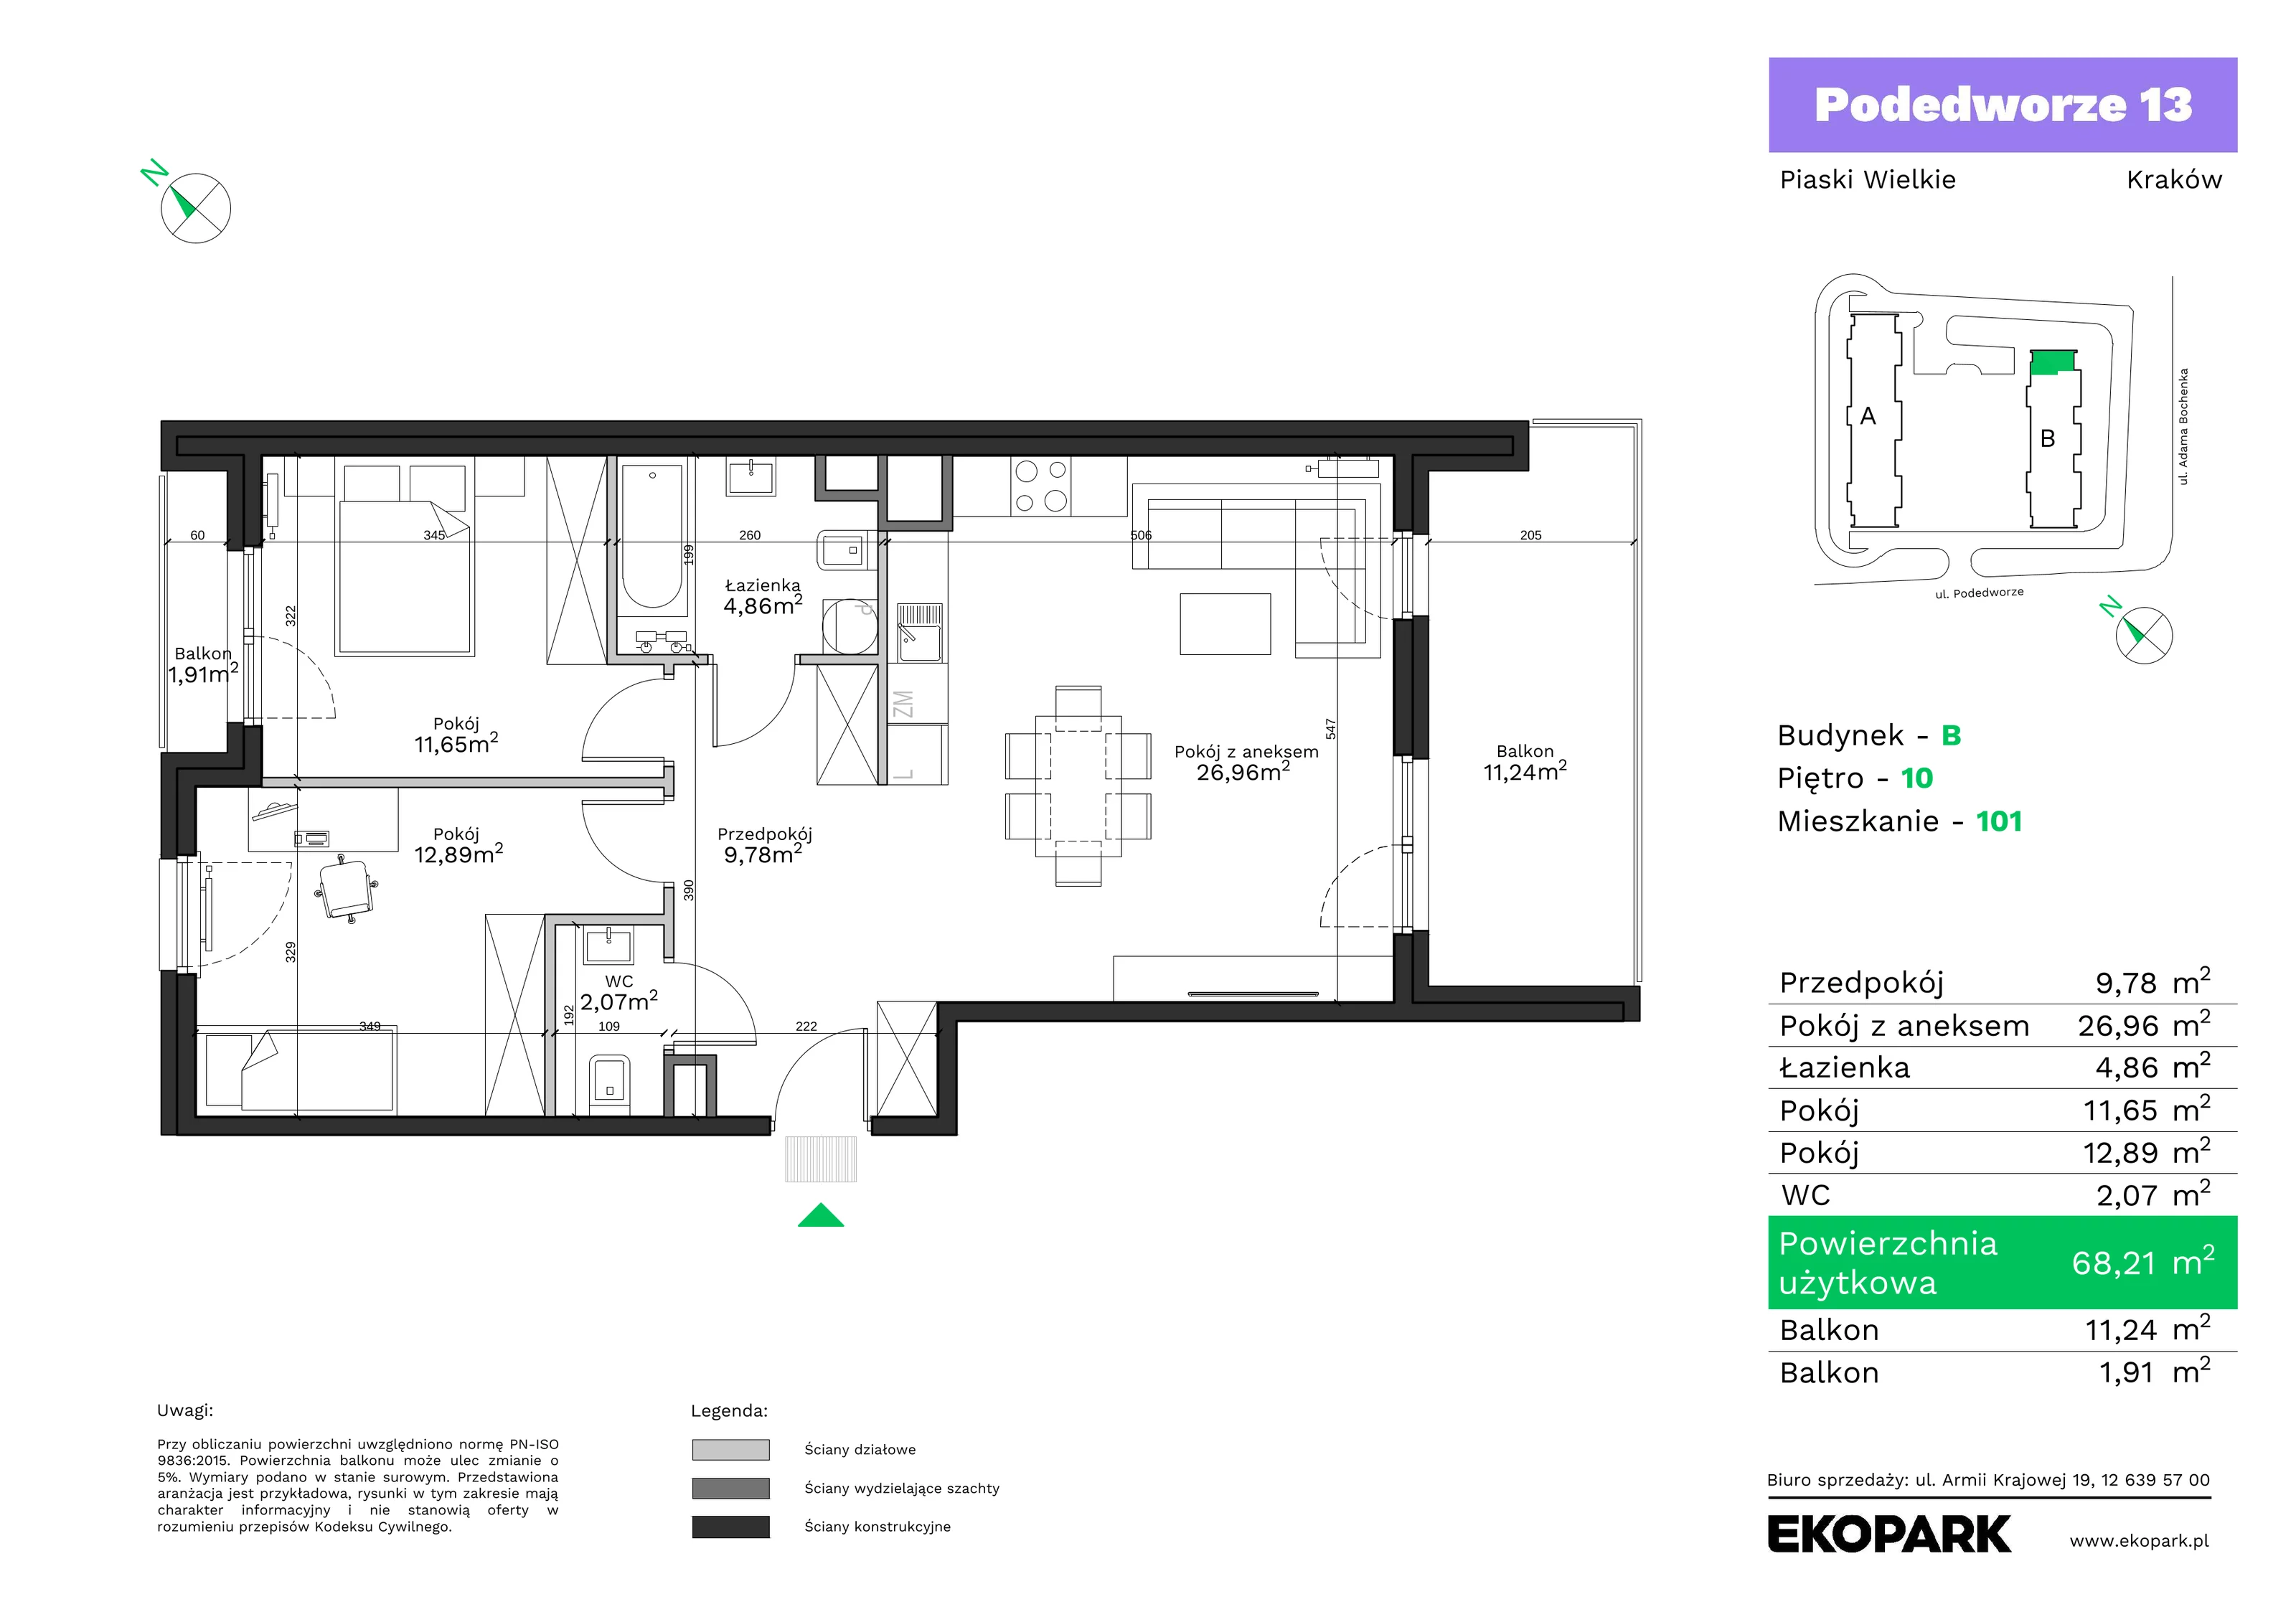 Mieszkanie 68,21 m², piętro 10, oferta nr B101, Podedworze 13, Kraków, Podgórze Duchackie, Piaski Wielkie, ul. Podedworze 13